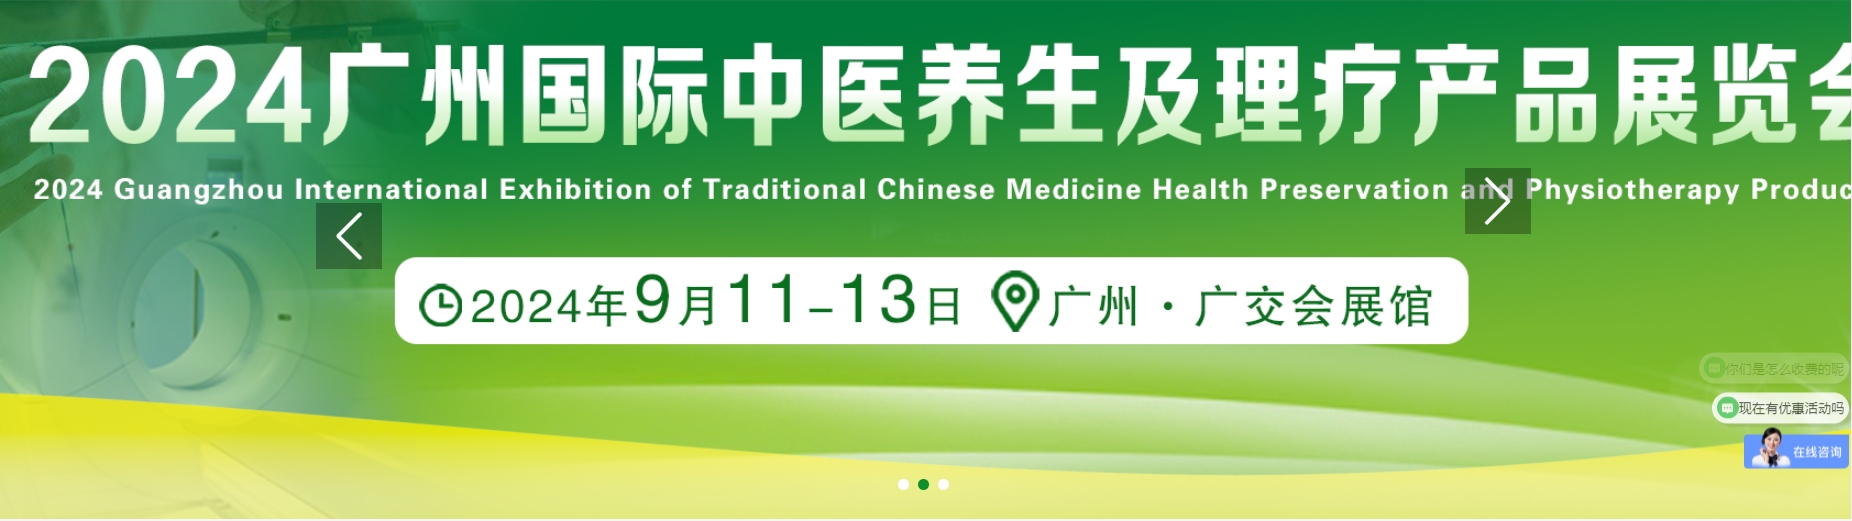 2024广州国际健康产业展览会